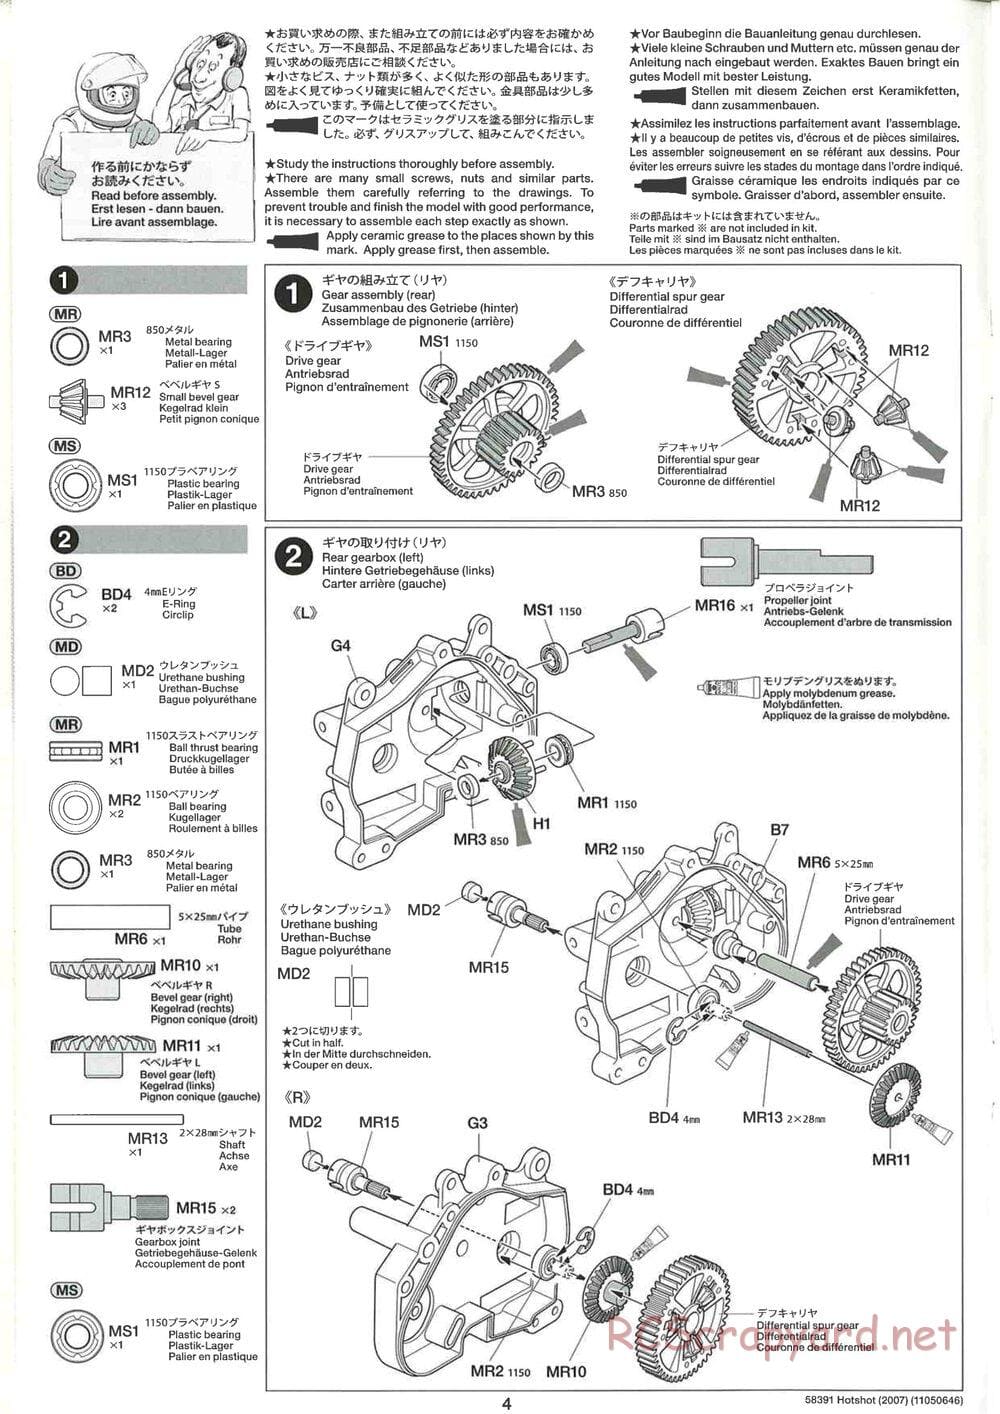 Tamiya - Hotshot - 2007 - HS Chassis - Manual - Page 4